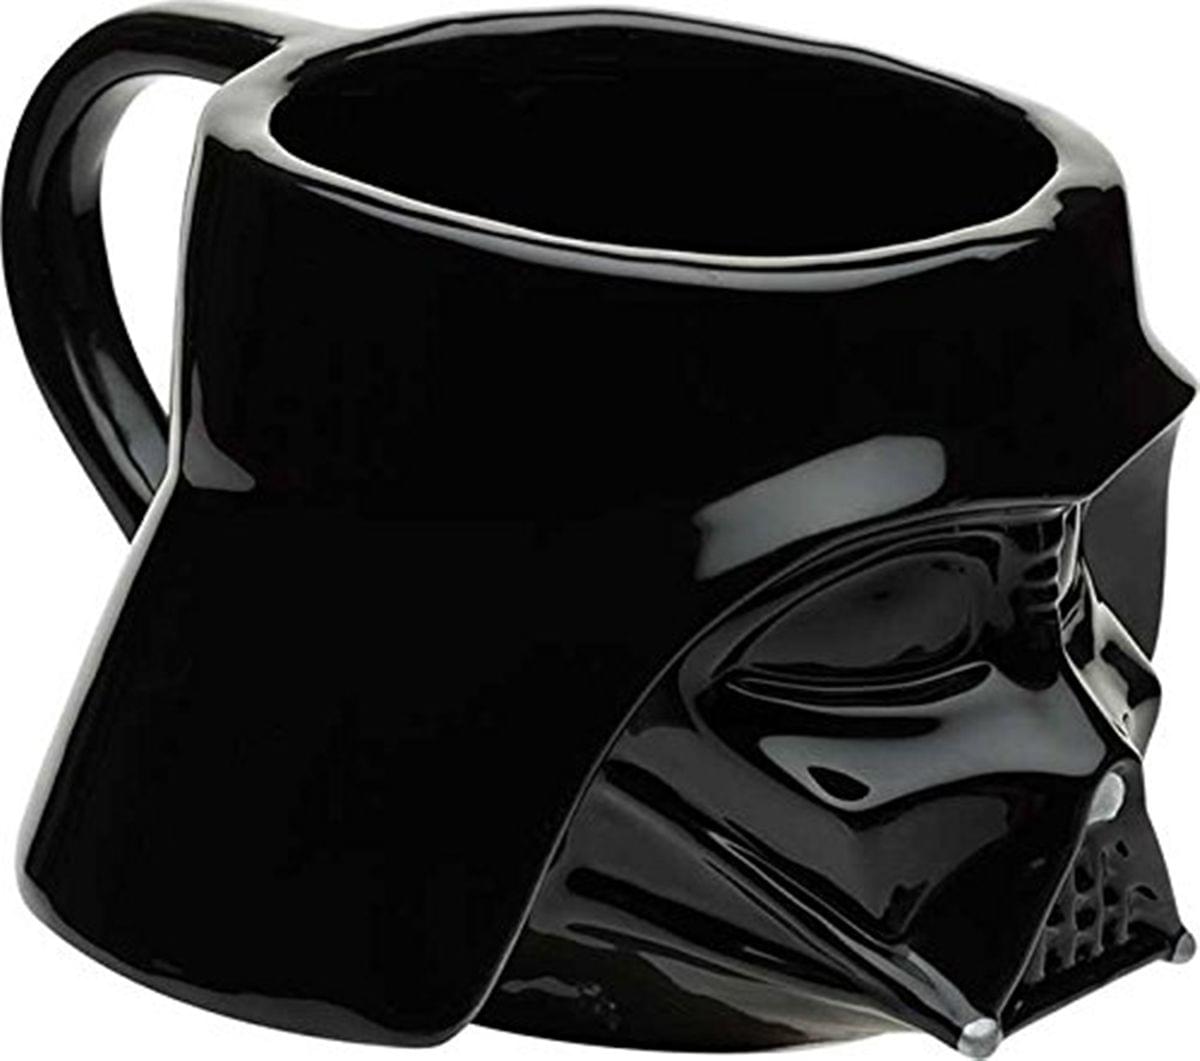 Star Wars Darth Vader Sculpted Ceramic Mug